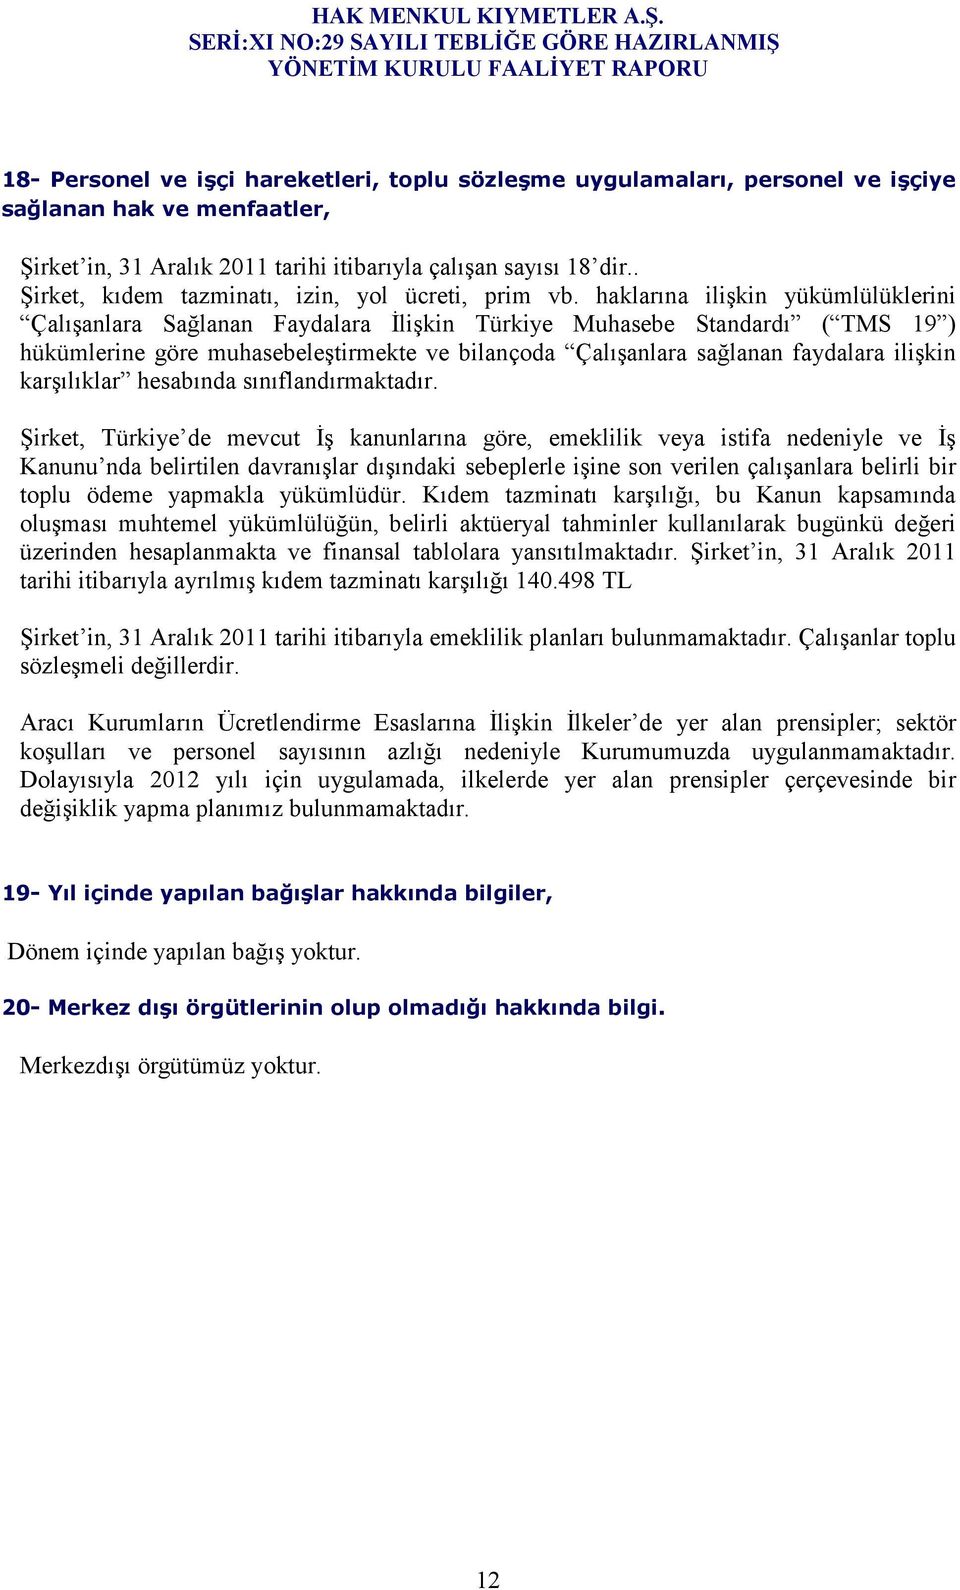 haklarına ilişkin yükümlülüklerini Çalışanlara Sağlanan Faydalara Đlişkin Türkiye Muhasebe Standardı ( TMS 19 ) hükümlerine göre muhasebeleştirmekte ve bilançoda Çalışanlara sağlanan faydalara